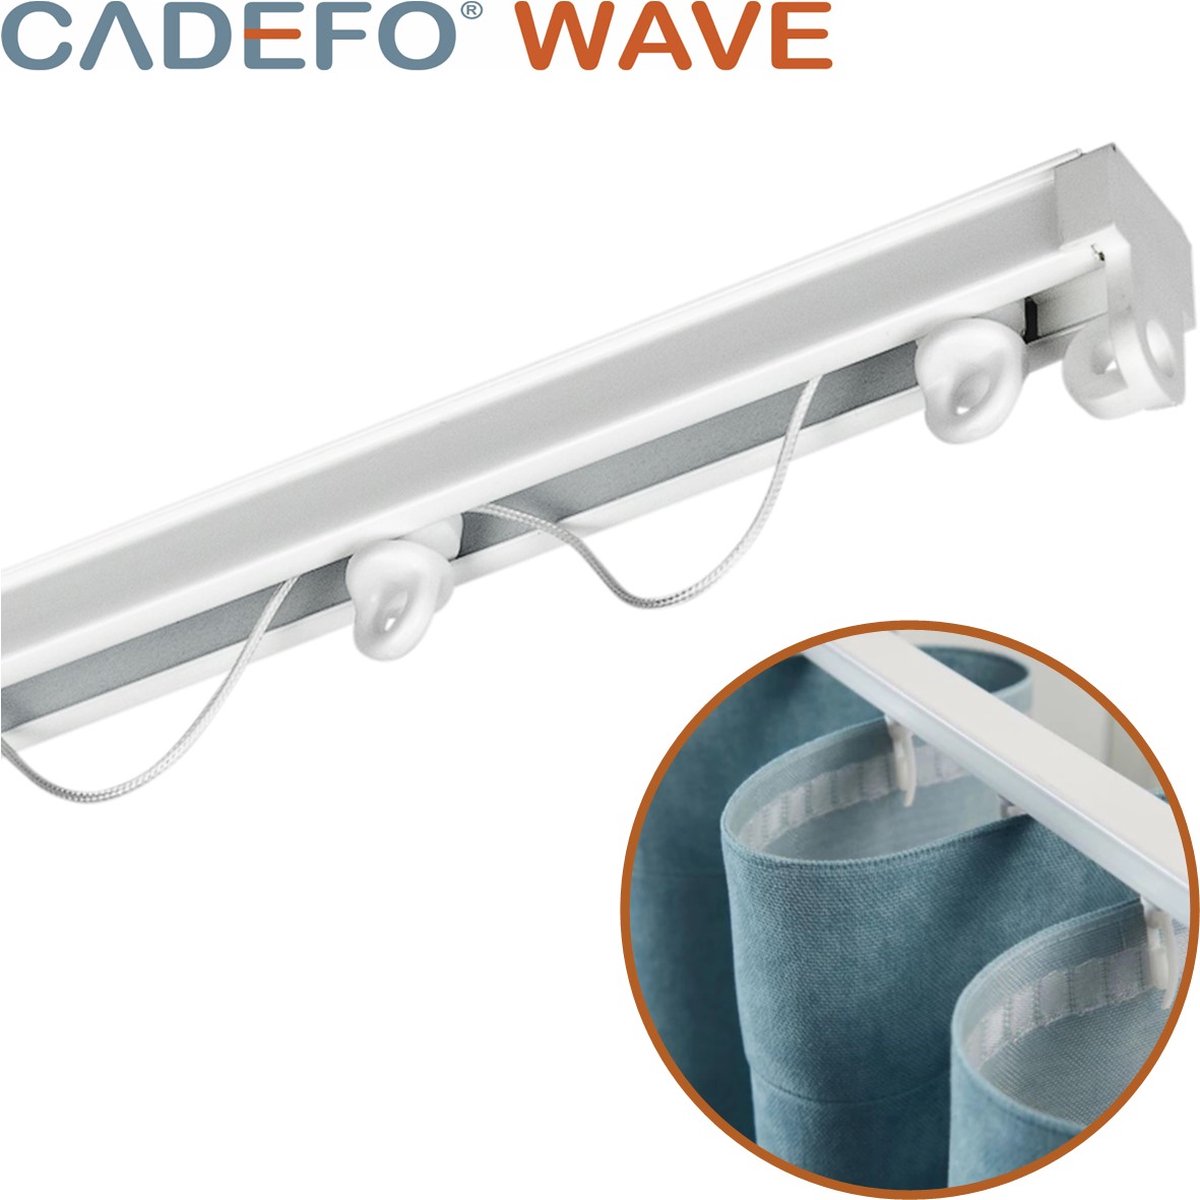 CADEFO WAVE (351 - 400 cm) Gordijnrails - Compleet op maat! - UIT 1 STUK - Leverbaar tot 6 meter - Plafondbevestiging - Lengte 377 cm